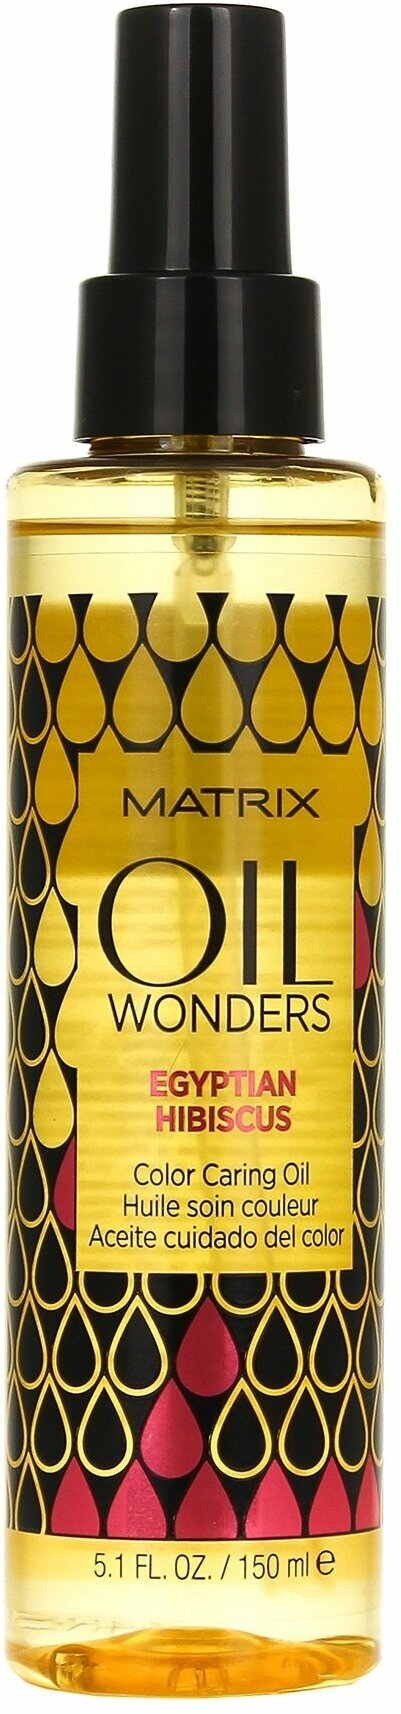 Масло для защиты цвета волос Matrix Oil Wonders Color Caring Oil